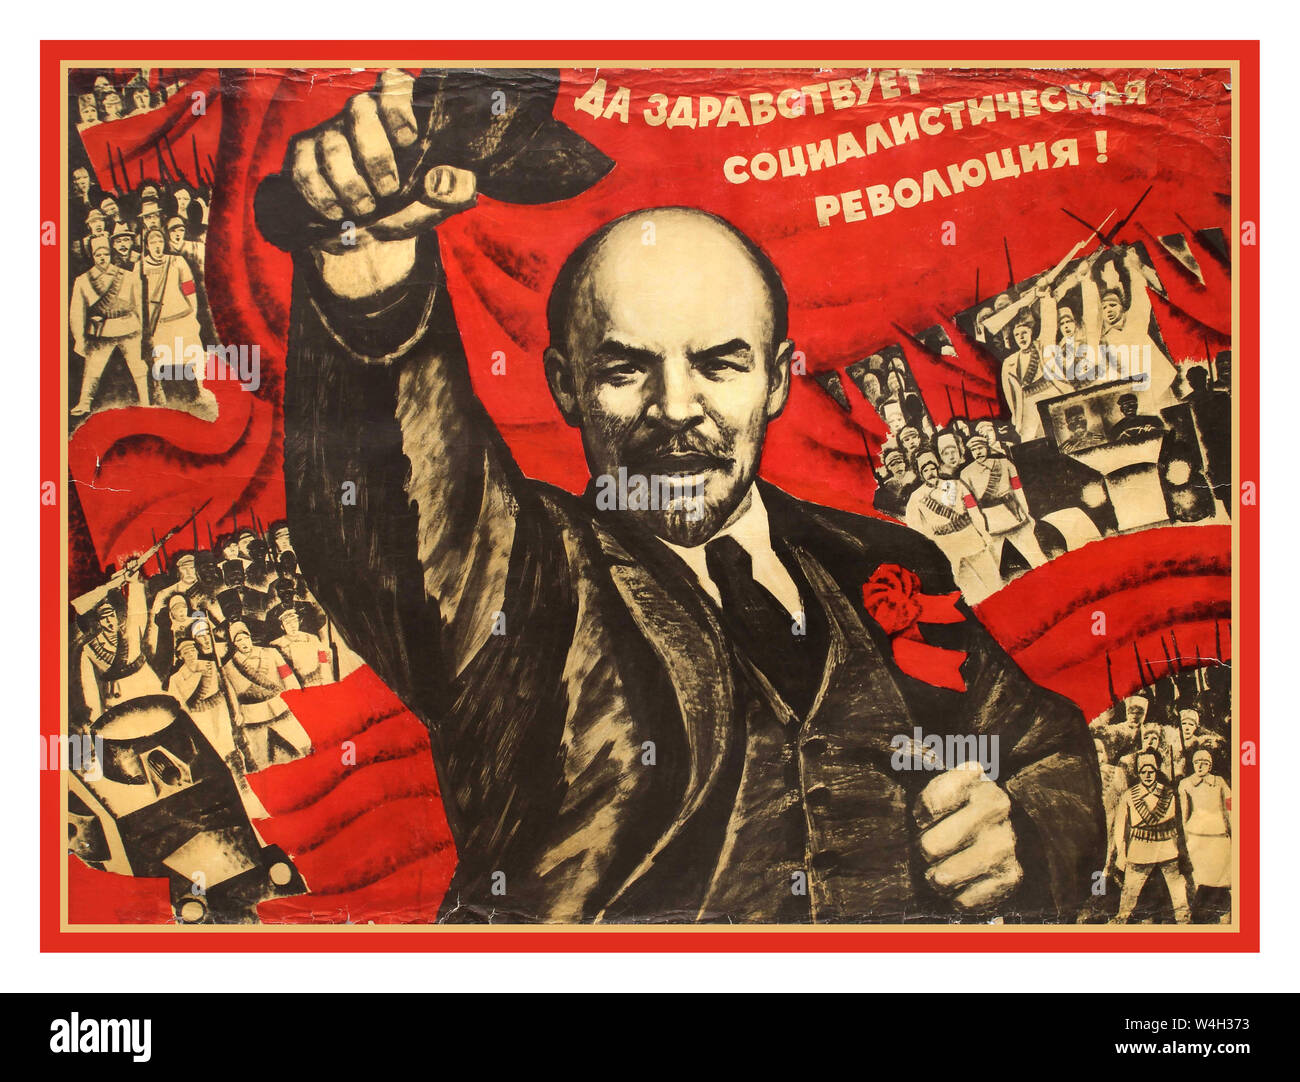 Poster della propaganda della rivoluzione sovietica d'epoca di LENIN del 1900 con Lenin che tiene il berretto e si muove in avanti su sfondo rosso con gruppi di soldati sovietici in uniforme e con fucili dietro di lui, il testo qui sopra: "Viva la rivoluzione socialista!" Russia, designer: Vladimir Kalensky , Foto Stock